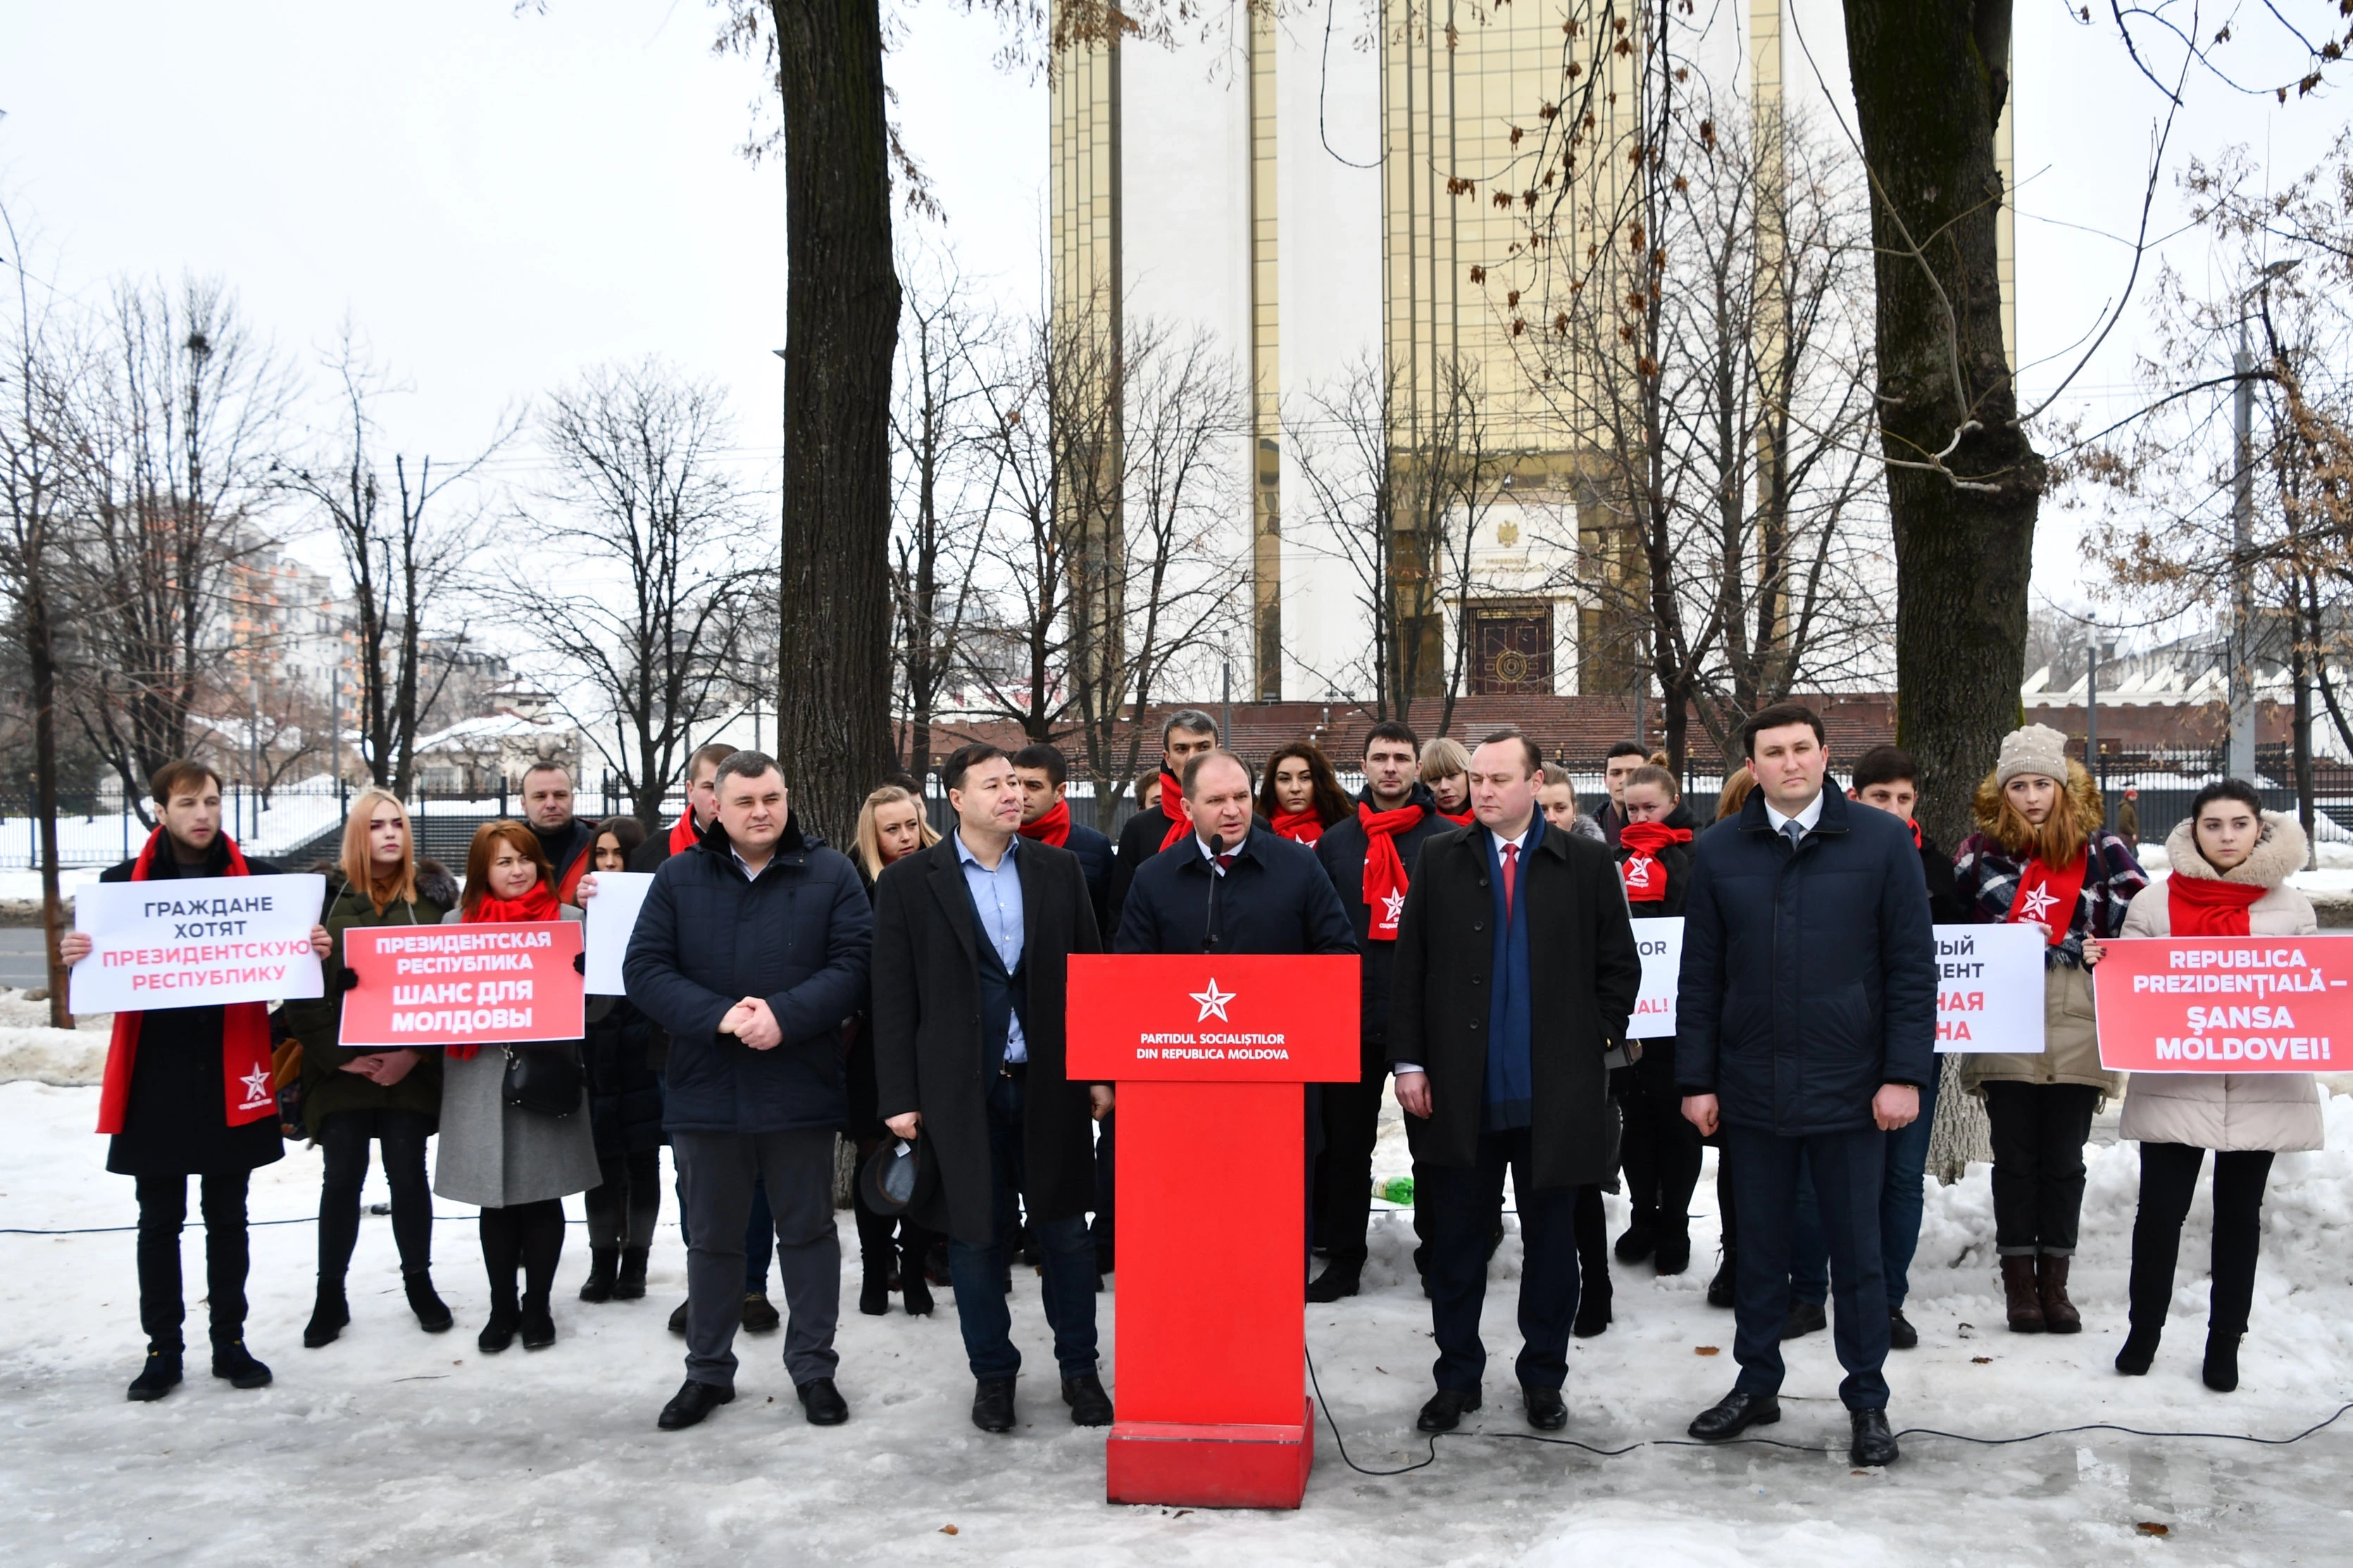 Socialiștii au prezentat argumente în favoarea tranziției către o formă prezidențială de guvernare în Republica Moldova